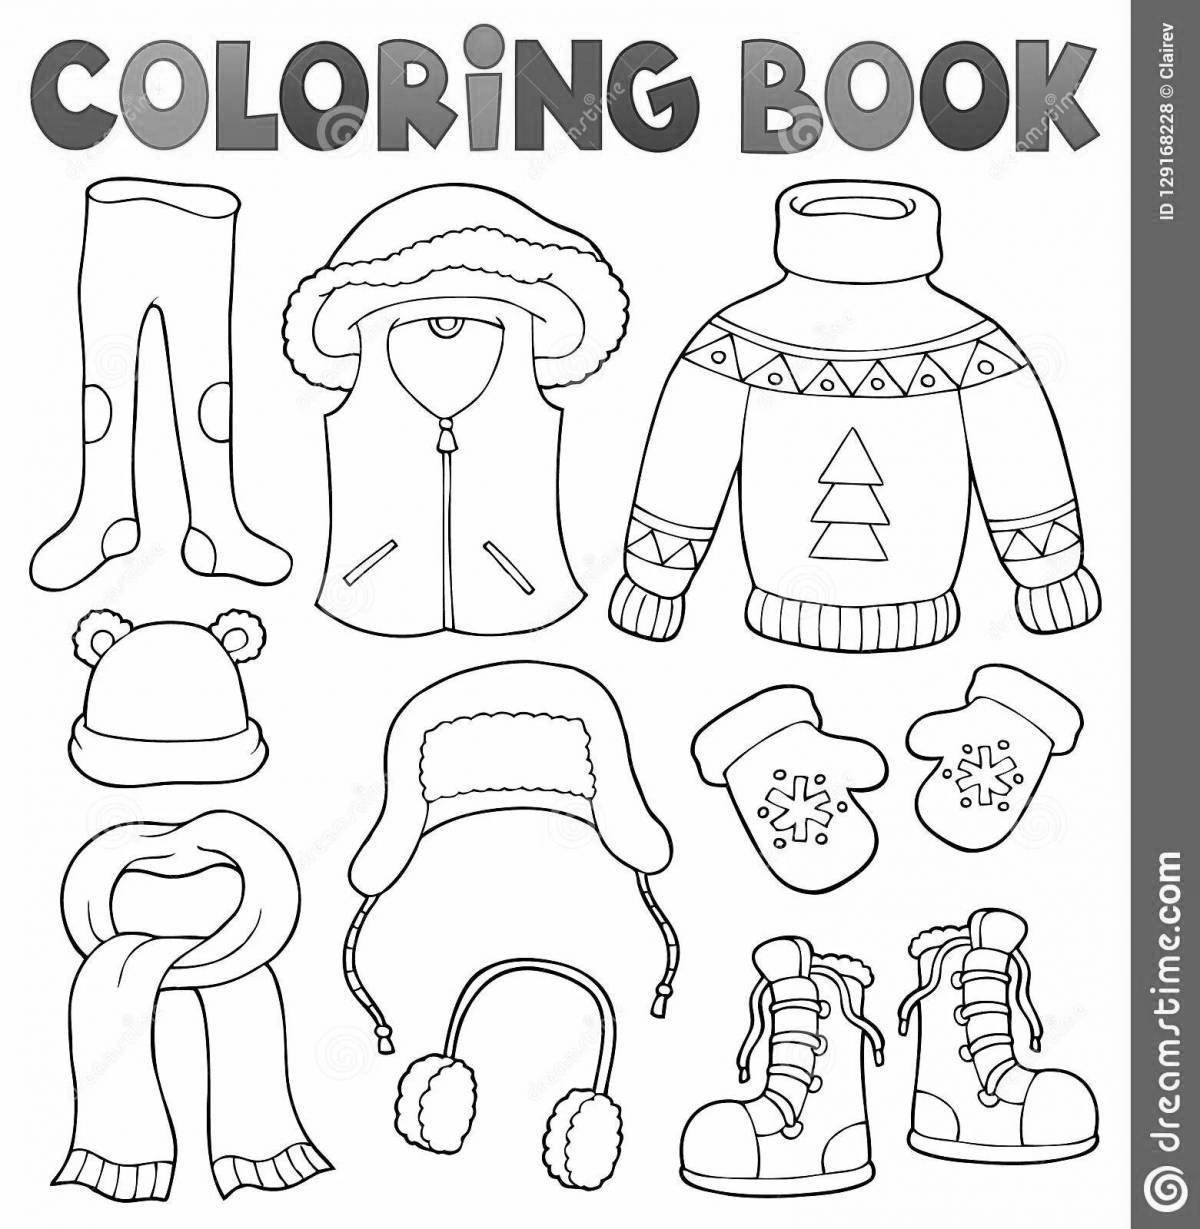 Веселая раскраска зимней одежды для детей 5-6 лет